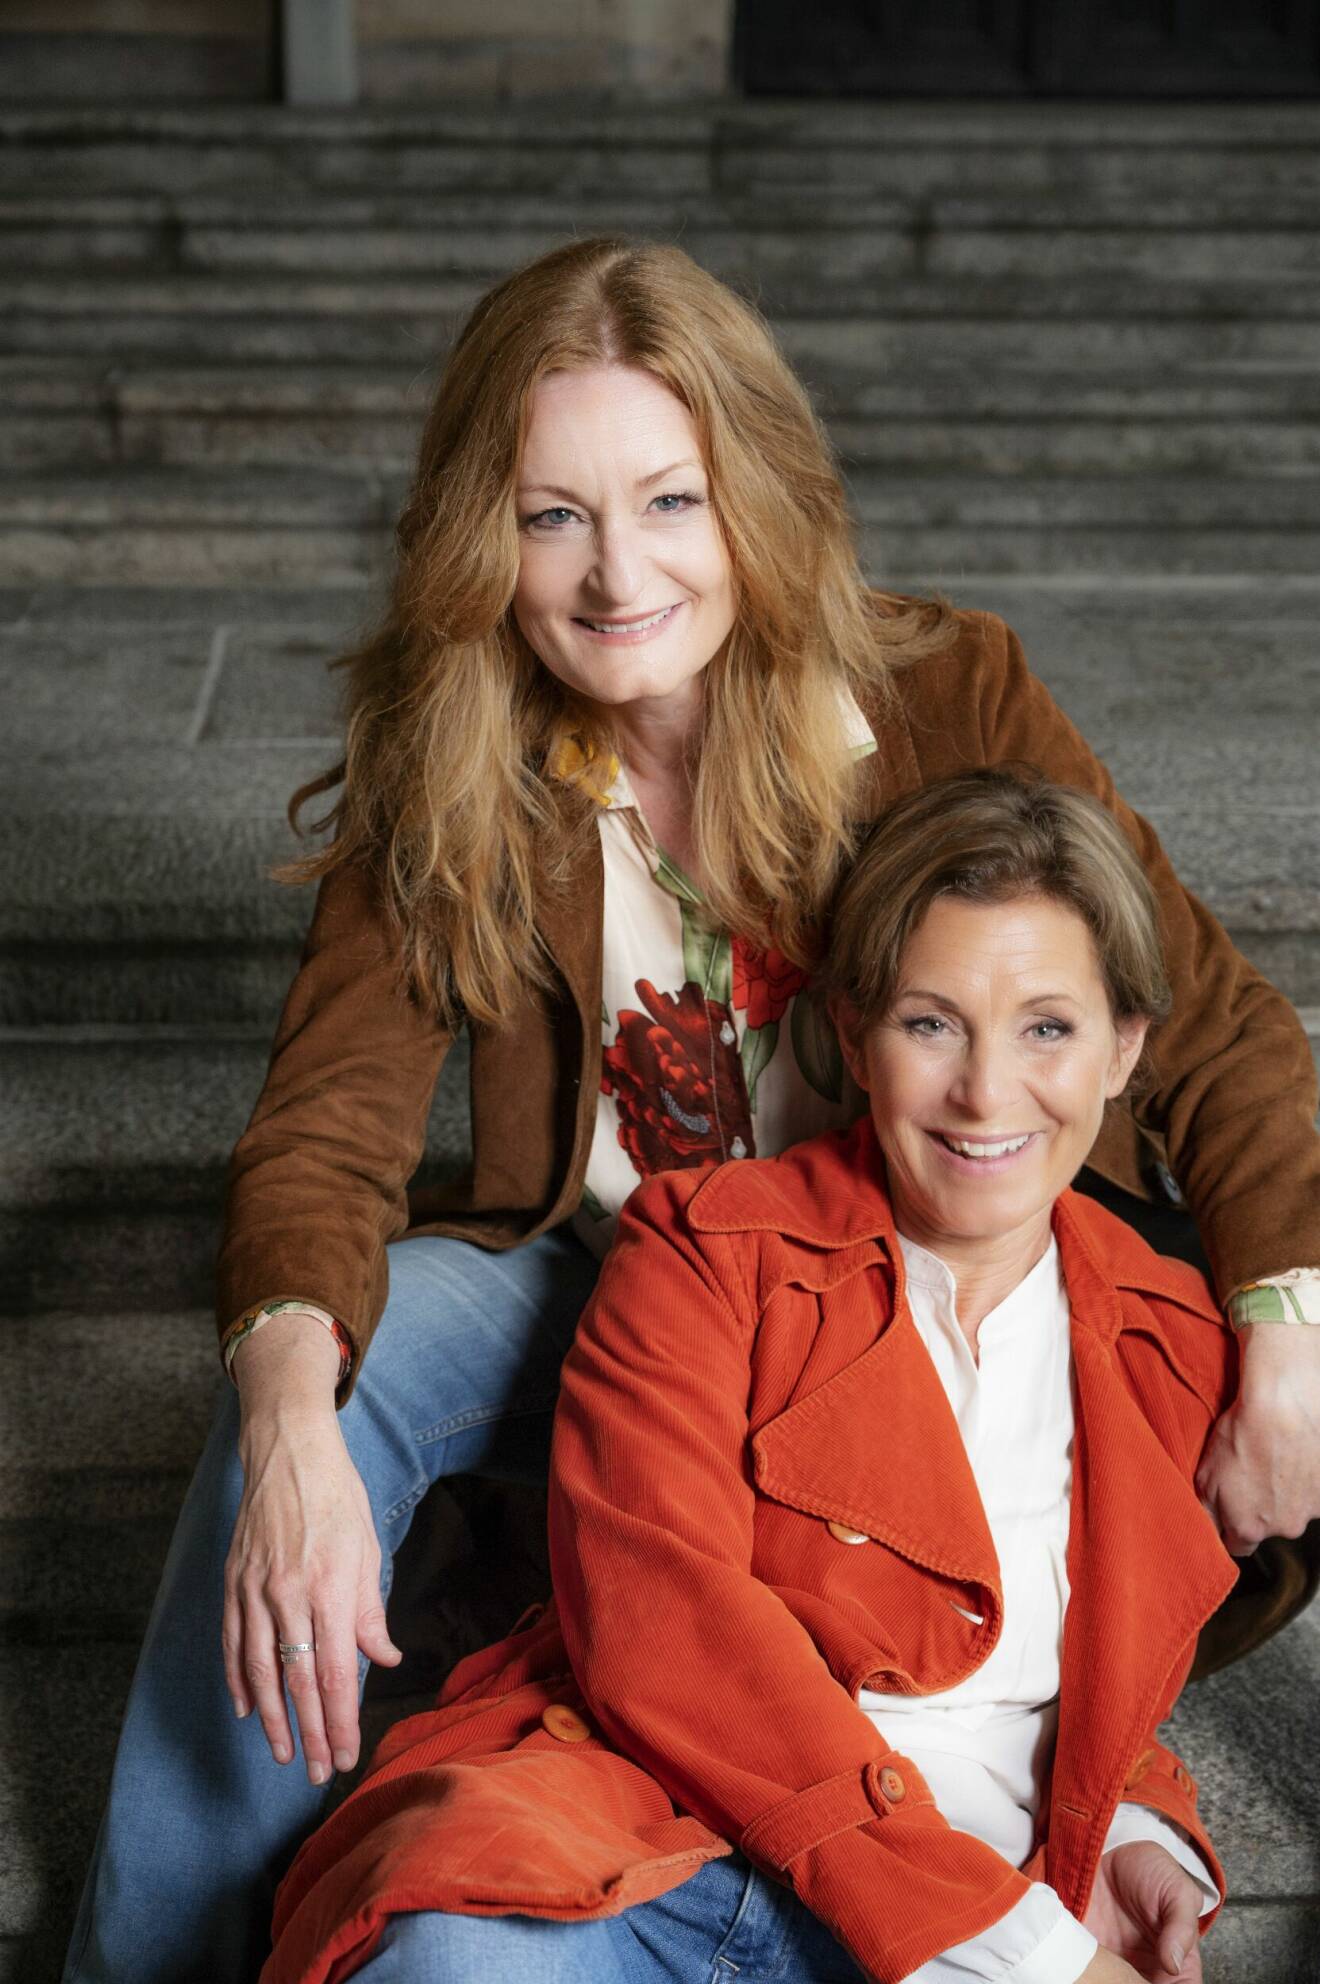 Sångerskorna Helen Sjöholm och Anna Stadling sitter i en trappa nära varandra och skrattar.